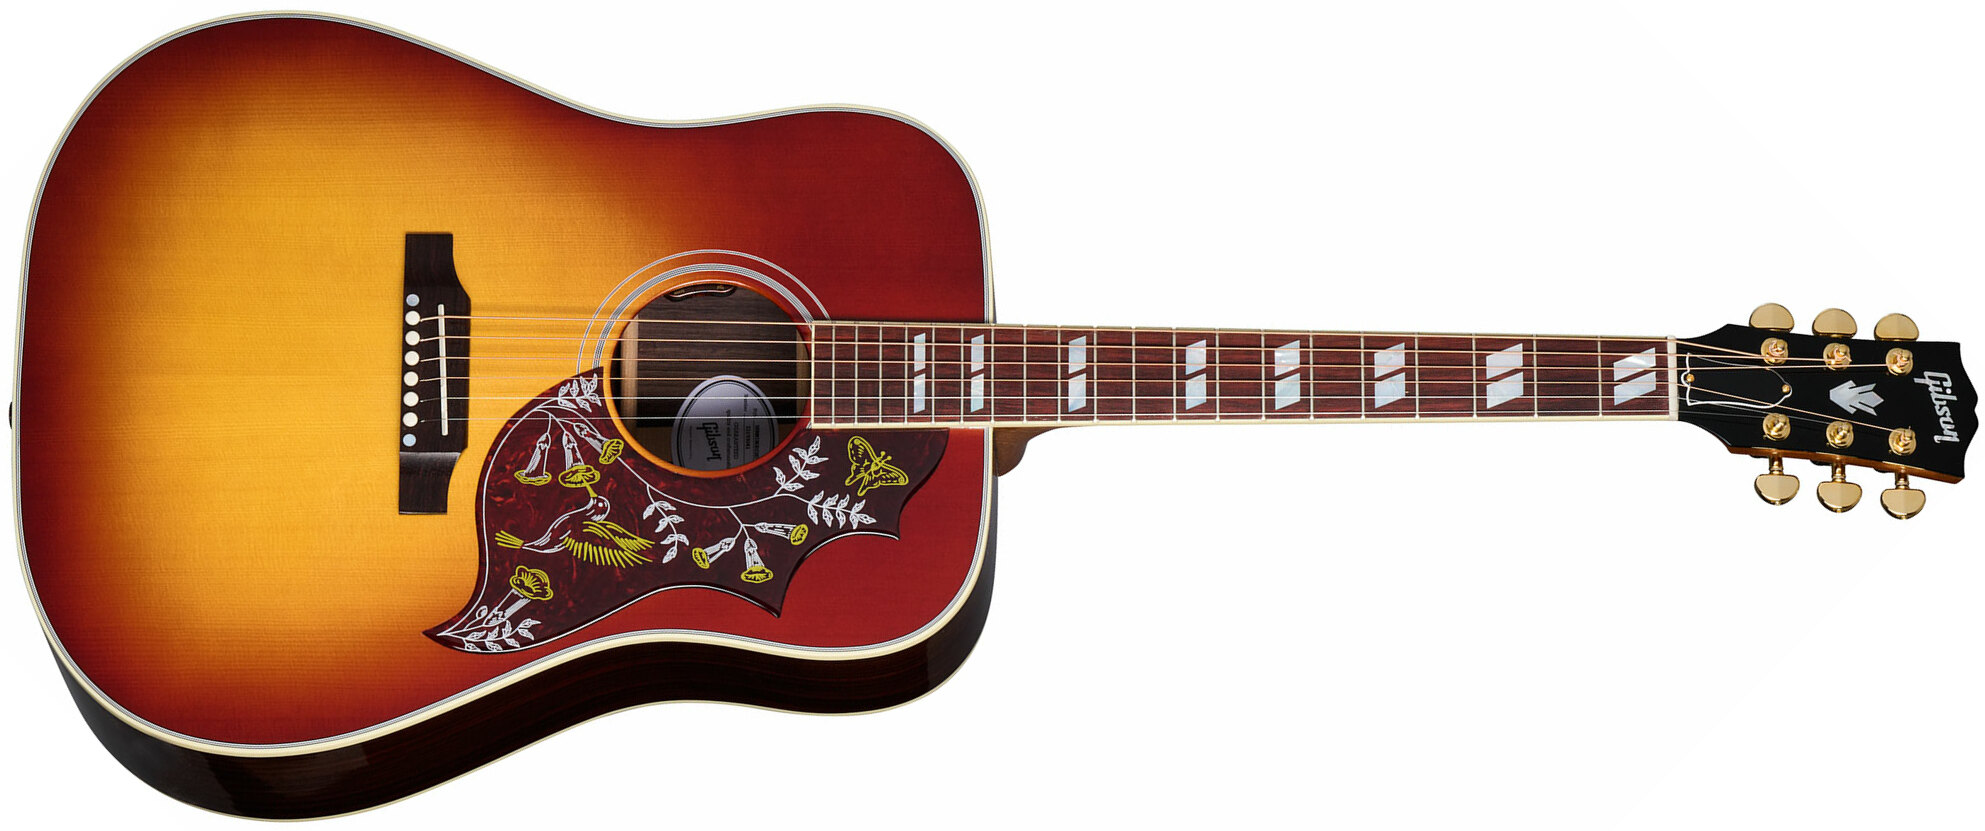 Gibson Hummingbird Standard Rosewood Dreadnought Epicea Acajou Rw - Rosewood Burst - Elektroakustische Gitarre - Main picture